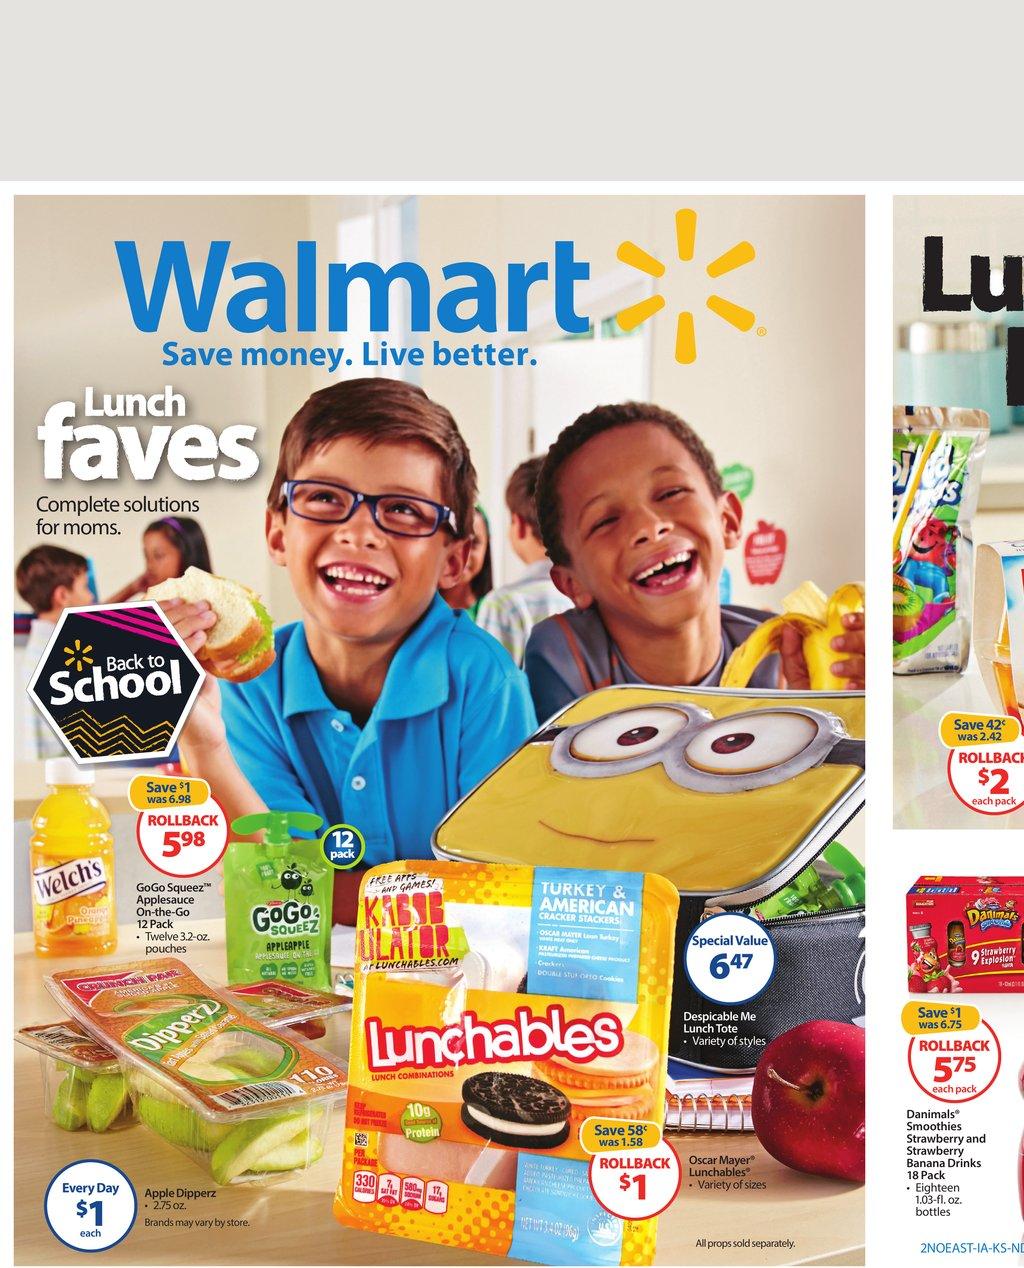 Walmart Weekly Ad Back To School Aug 14 2015  WeeklyAds2